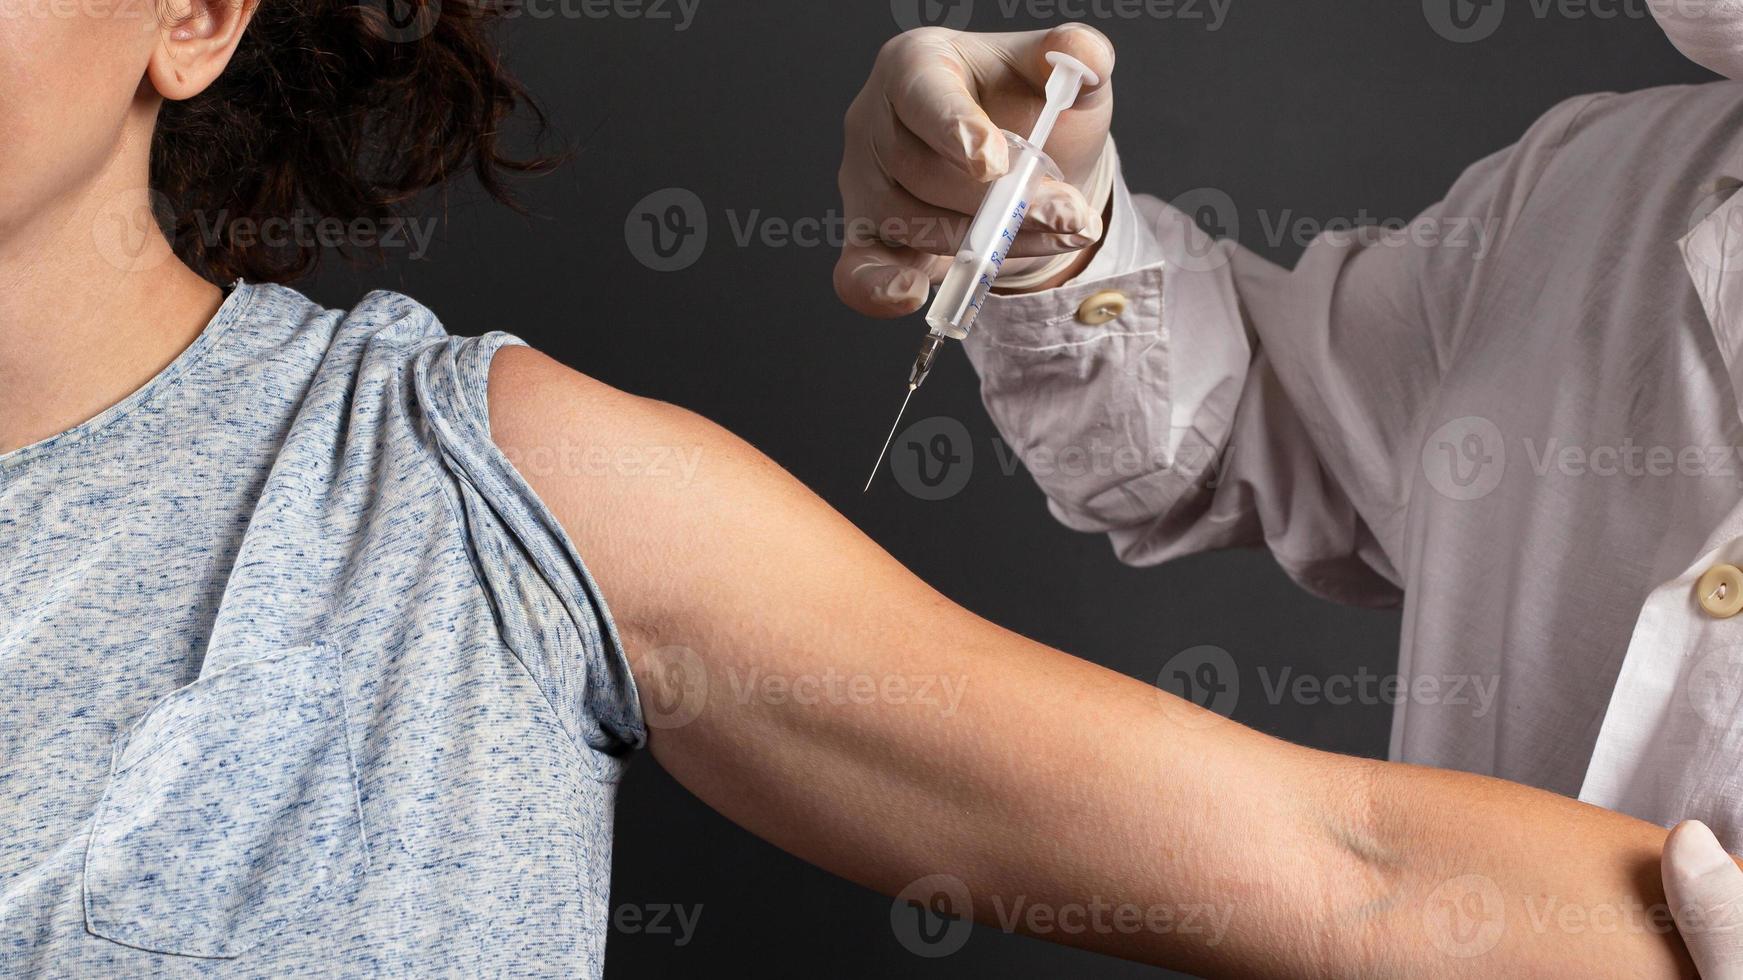 läkare ger en injektion till en sjuk patient på en mörk bakgrund foto